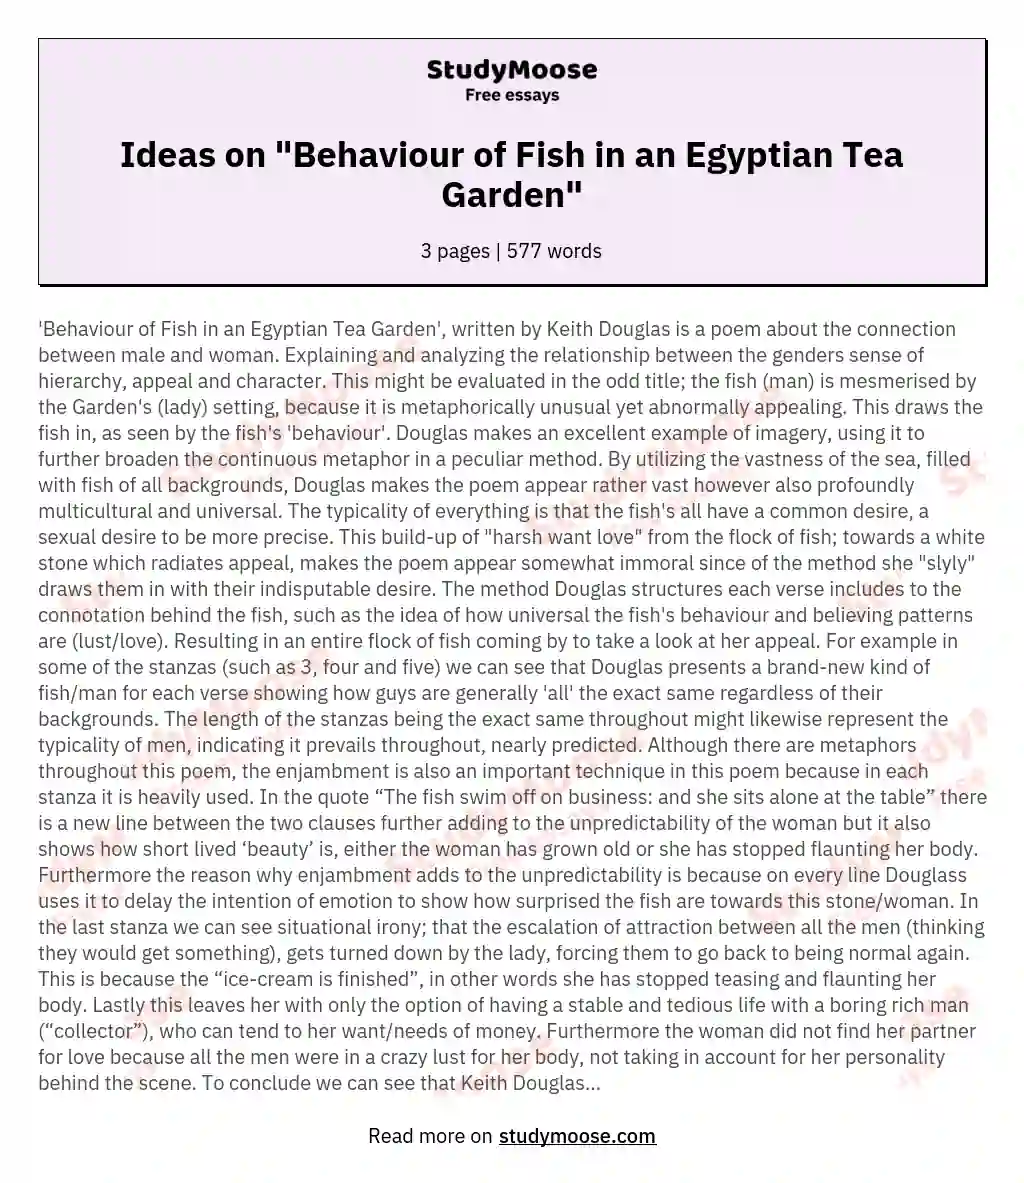 Ideas on "Behaviour of Fish in an Egyptian Tea Garden"